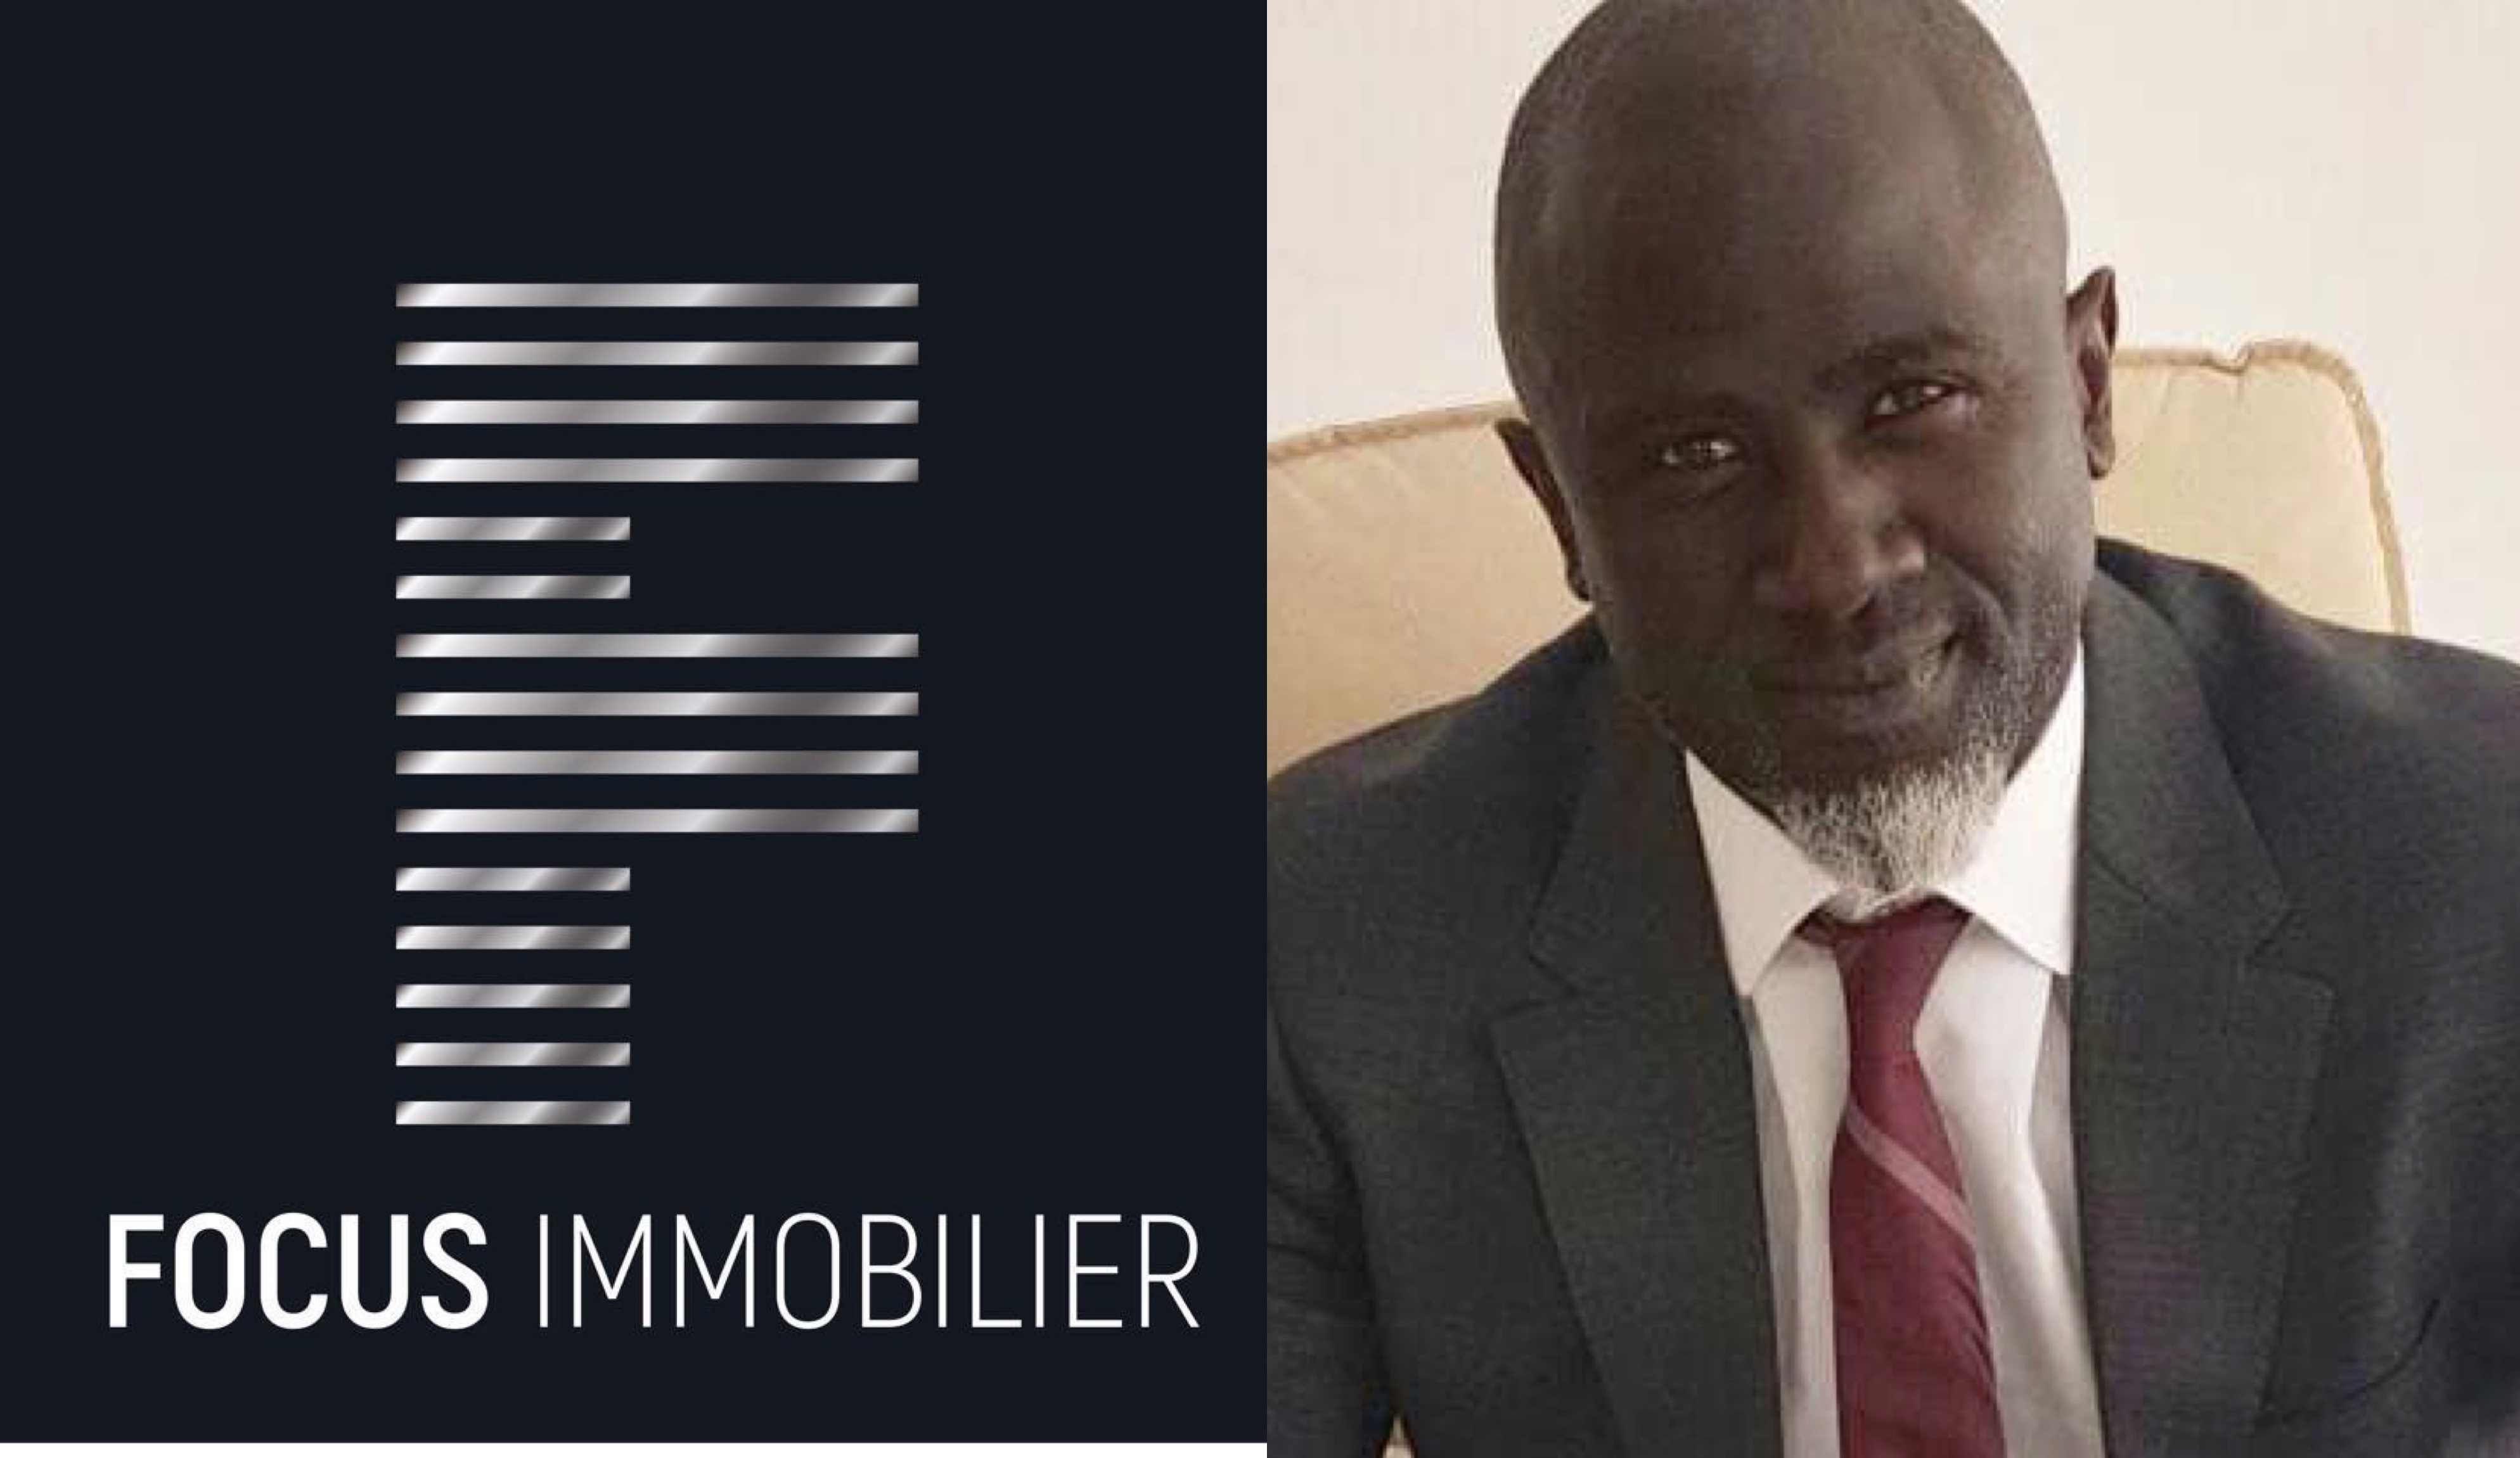 OPÉRATIONS FINANCIÈRES DOUTEUSES: «Le Monde» épingle Me Habib Cissé et «Focus immobilier »